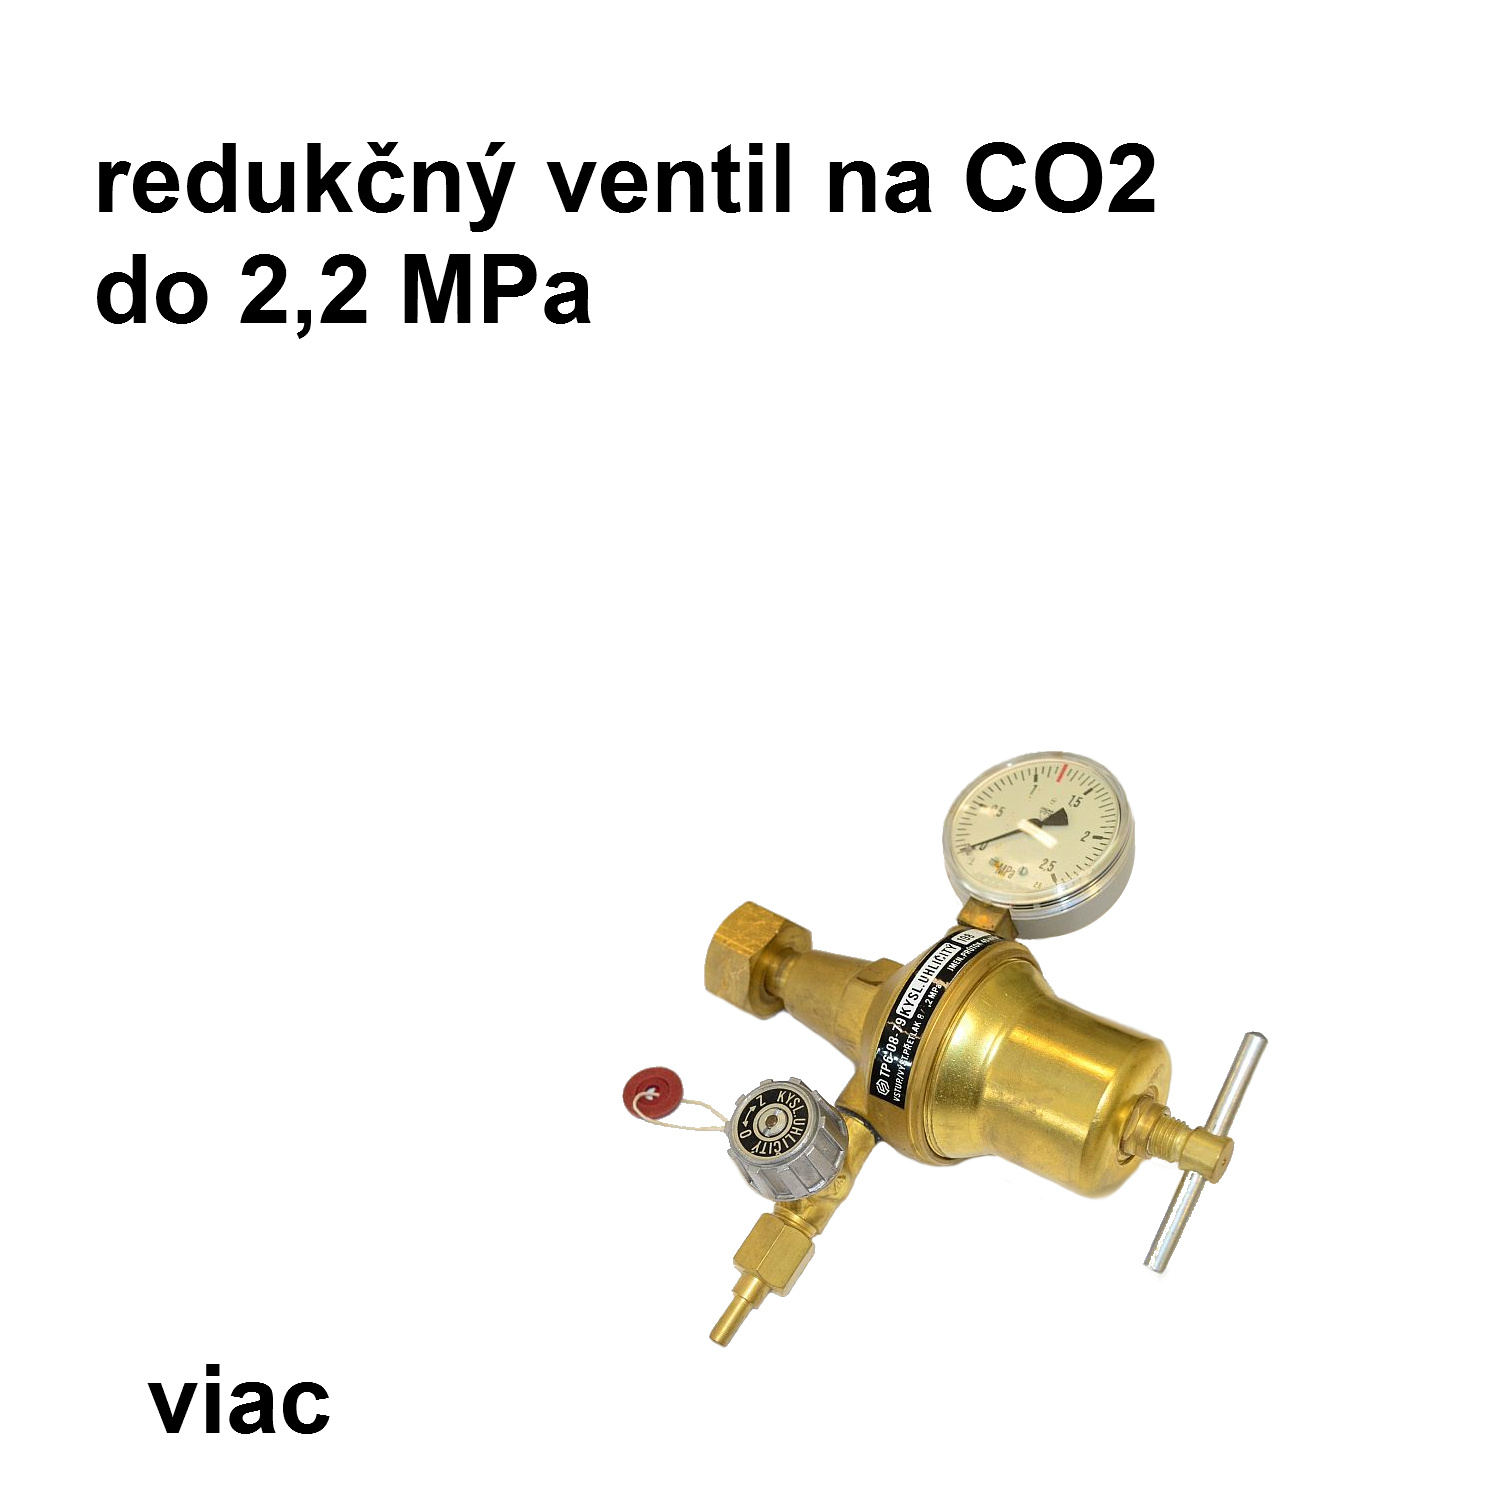 redukčný ventil CO2 - závit G 3/4" s jedným manometrom do 2,2 MPa